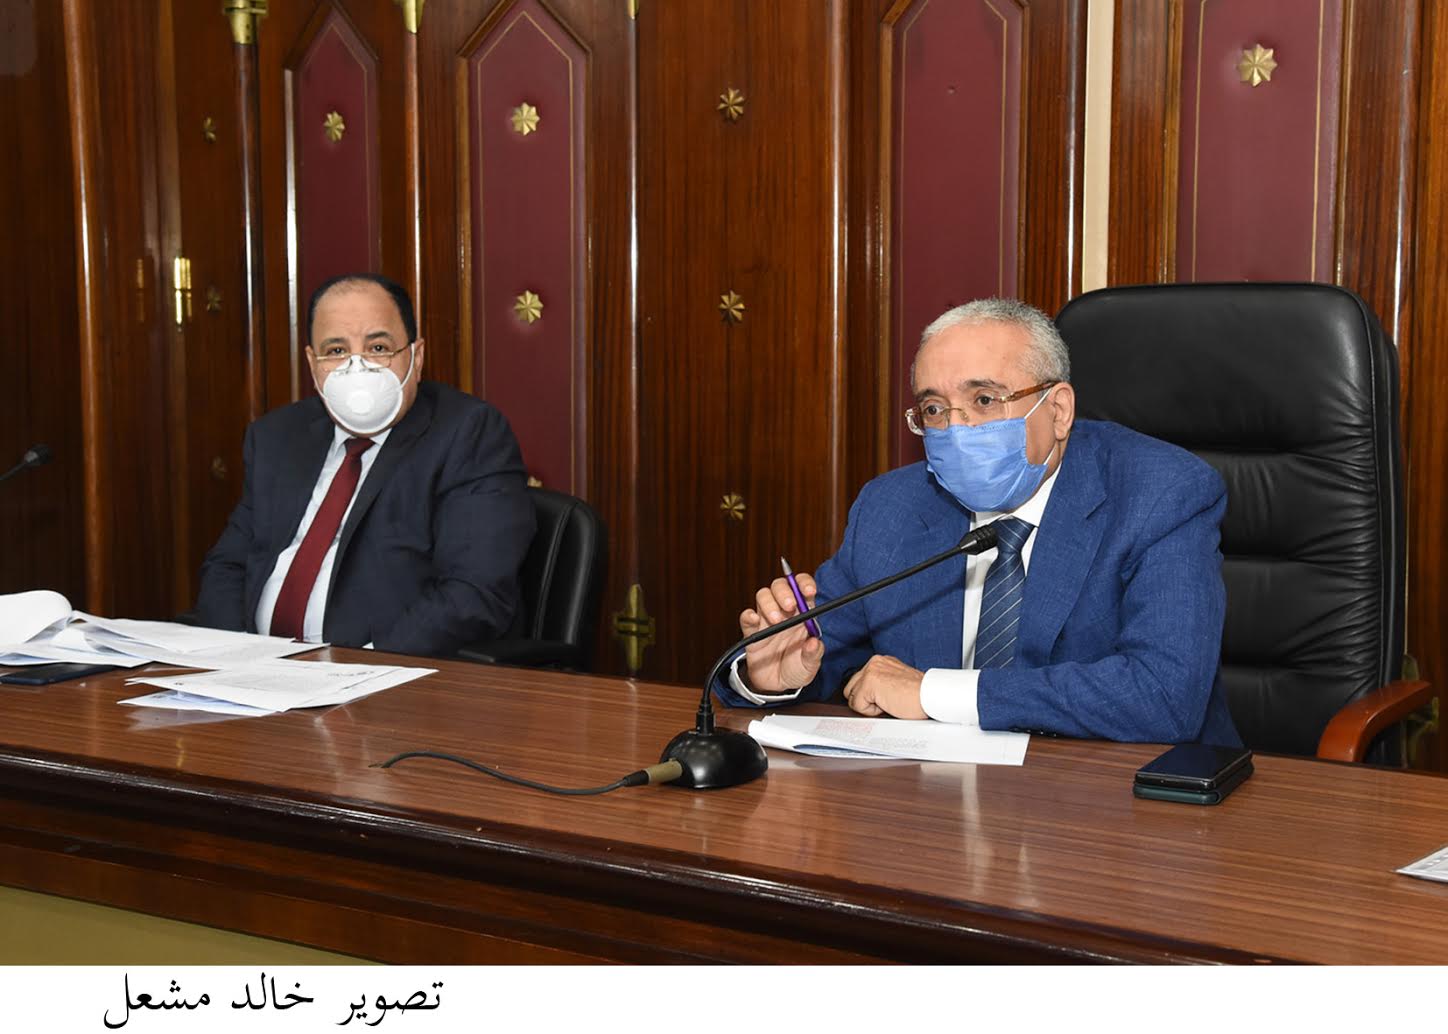 اجتماع لجنة الخطة والموازنة بمجلس النواب برئاسة الدكتور حسين عيسى، وبحضور وزير المالية